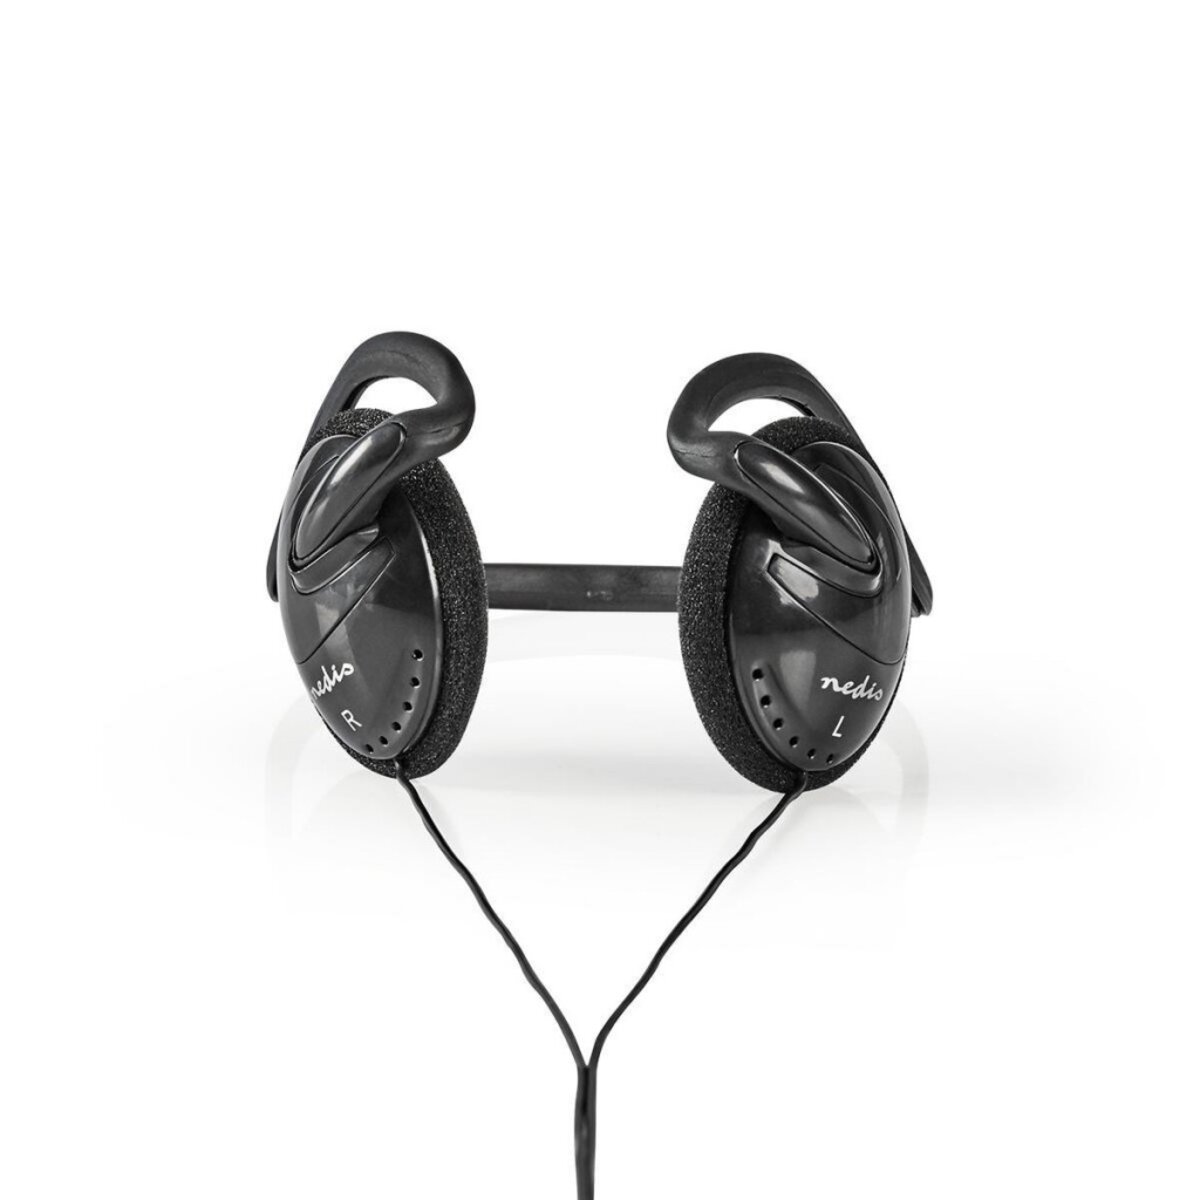 Ecouteurs filaires avec micro HPWD2020 Nedis - Casques et écouteurs